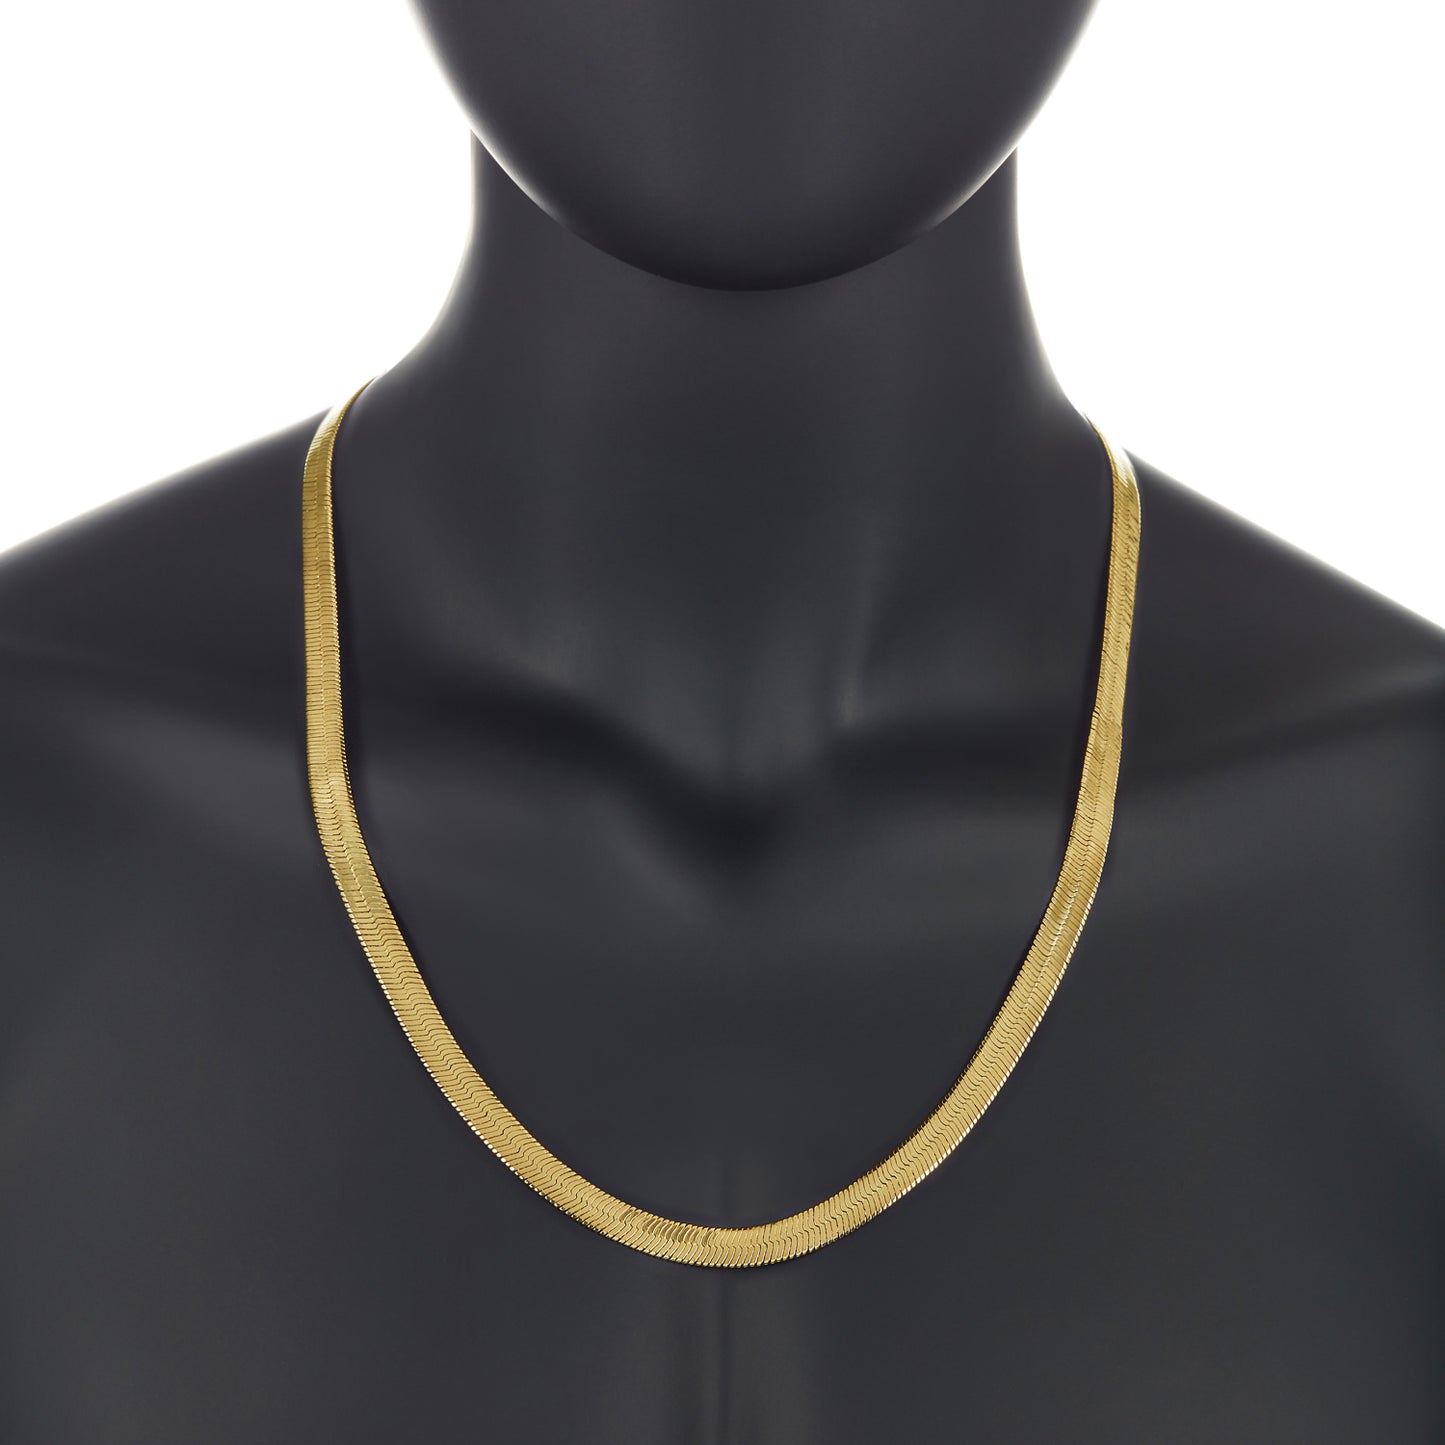 4mm-10mm 14k Yellow Gold Plated Flat Herringbone Chain Necklace or Bracelet (SKU: GL-HERRINGBONE-CHAINS)